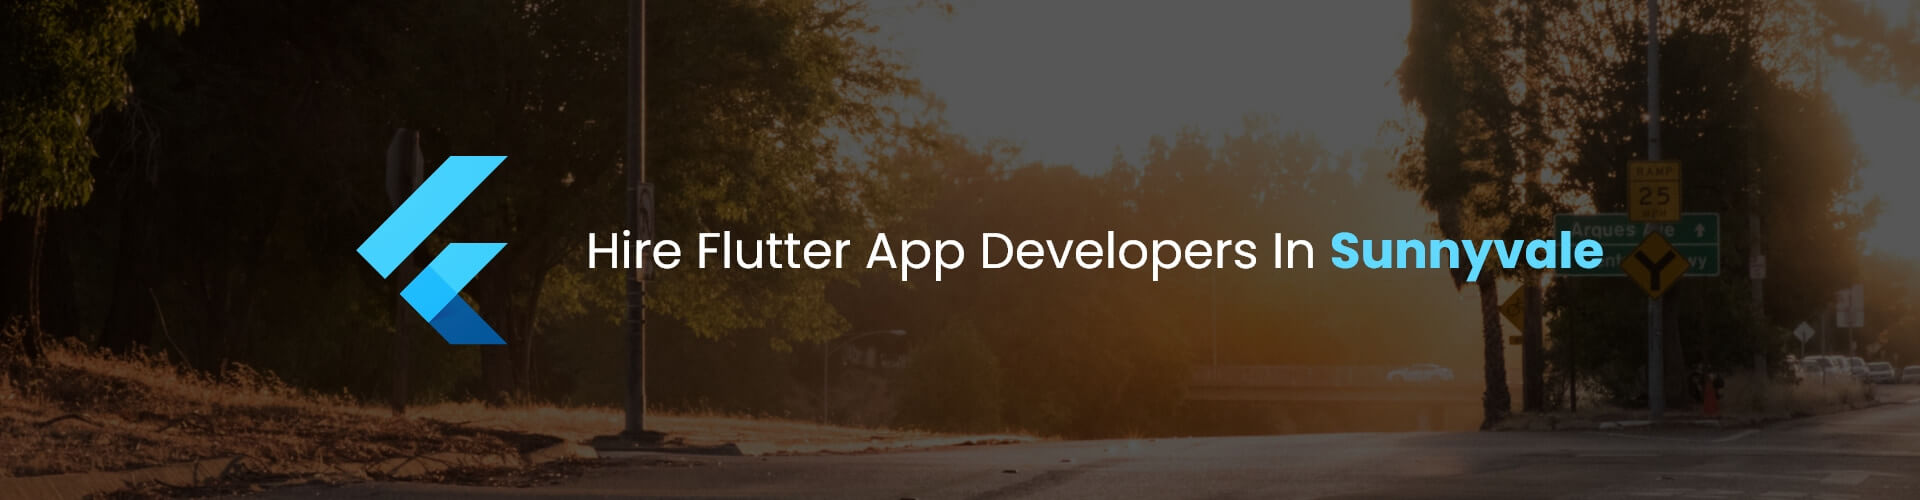 flutter app developers in sunnyvale